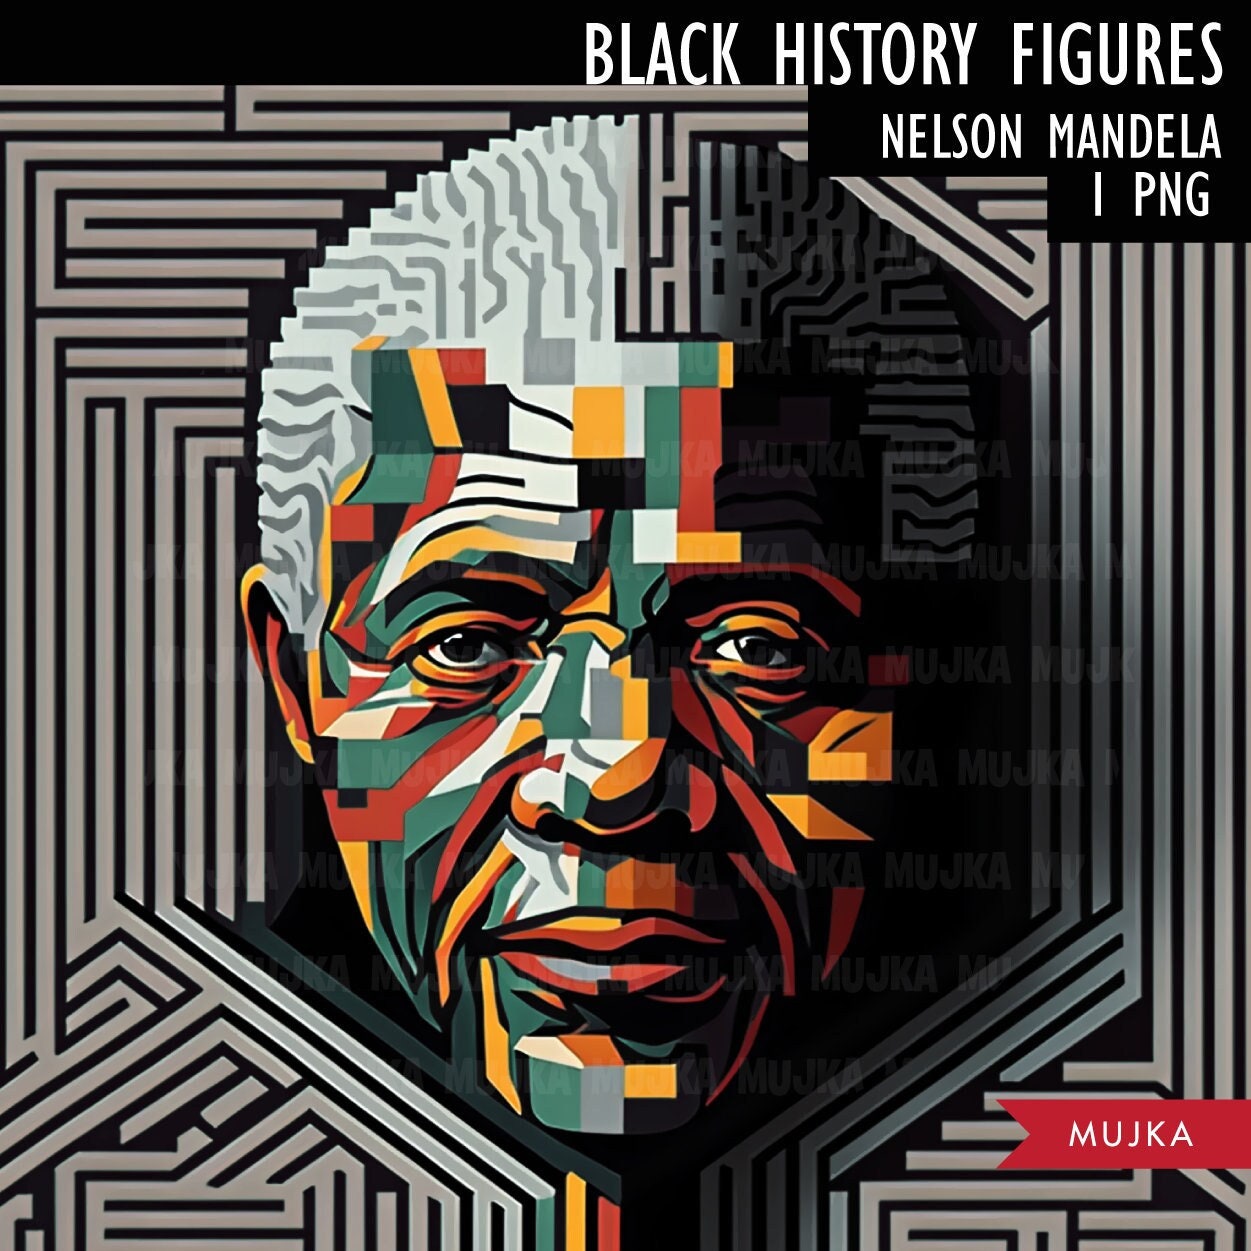 Black History PNG, Nelson Mandela poster, Black History Cards, printable Black History Art, Black History wall art, sublimation design